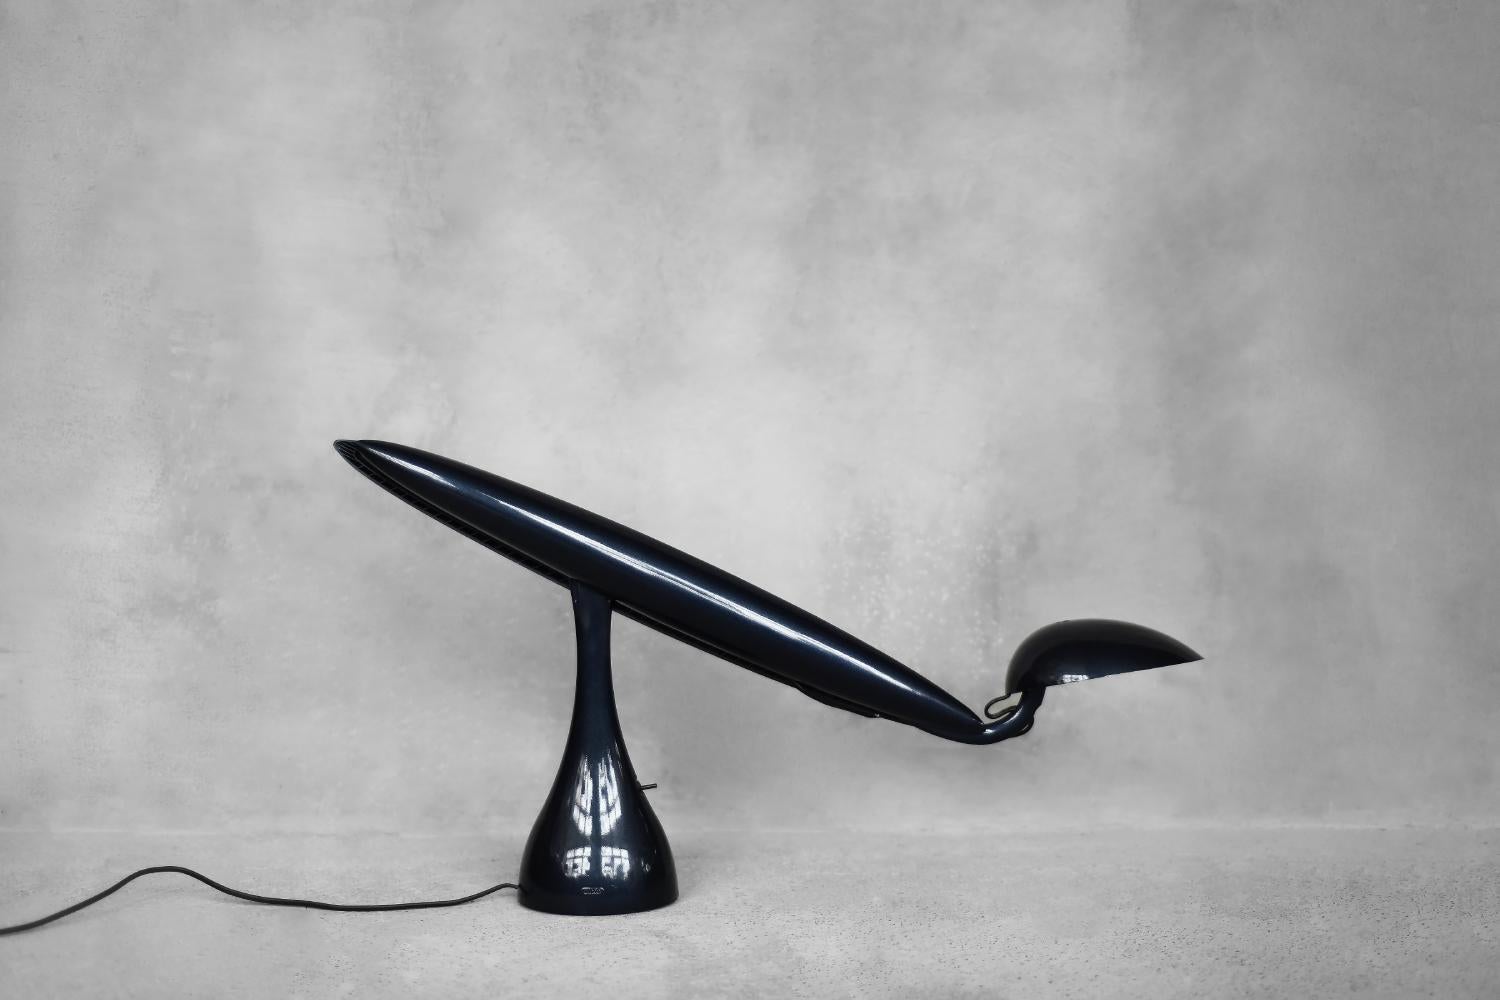 Die verstellbare Schreibtischleuchte Heron wurde 1994 von Isao Hosoe für den norwegischen Hersteller Luxo entworfen. Isao Hosoe hat mehrere Lampenmodelle entworfen, die von Vogelarten inspiriert sind. Heron ist jedoch nicht nur wegen seiner